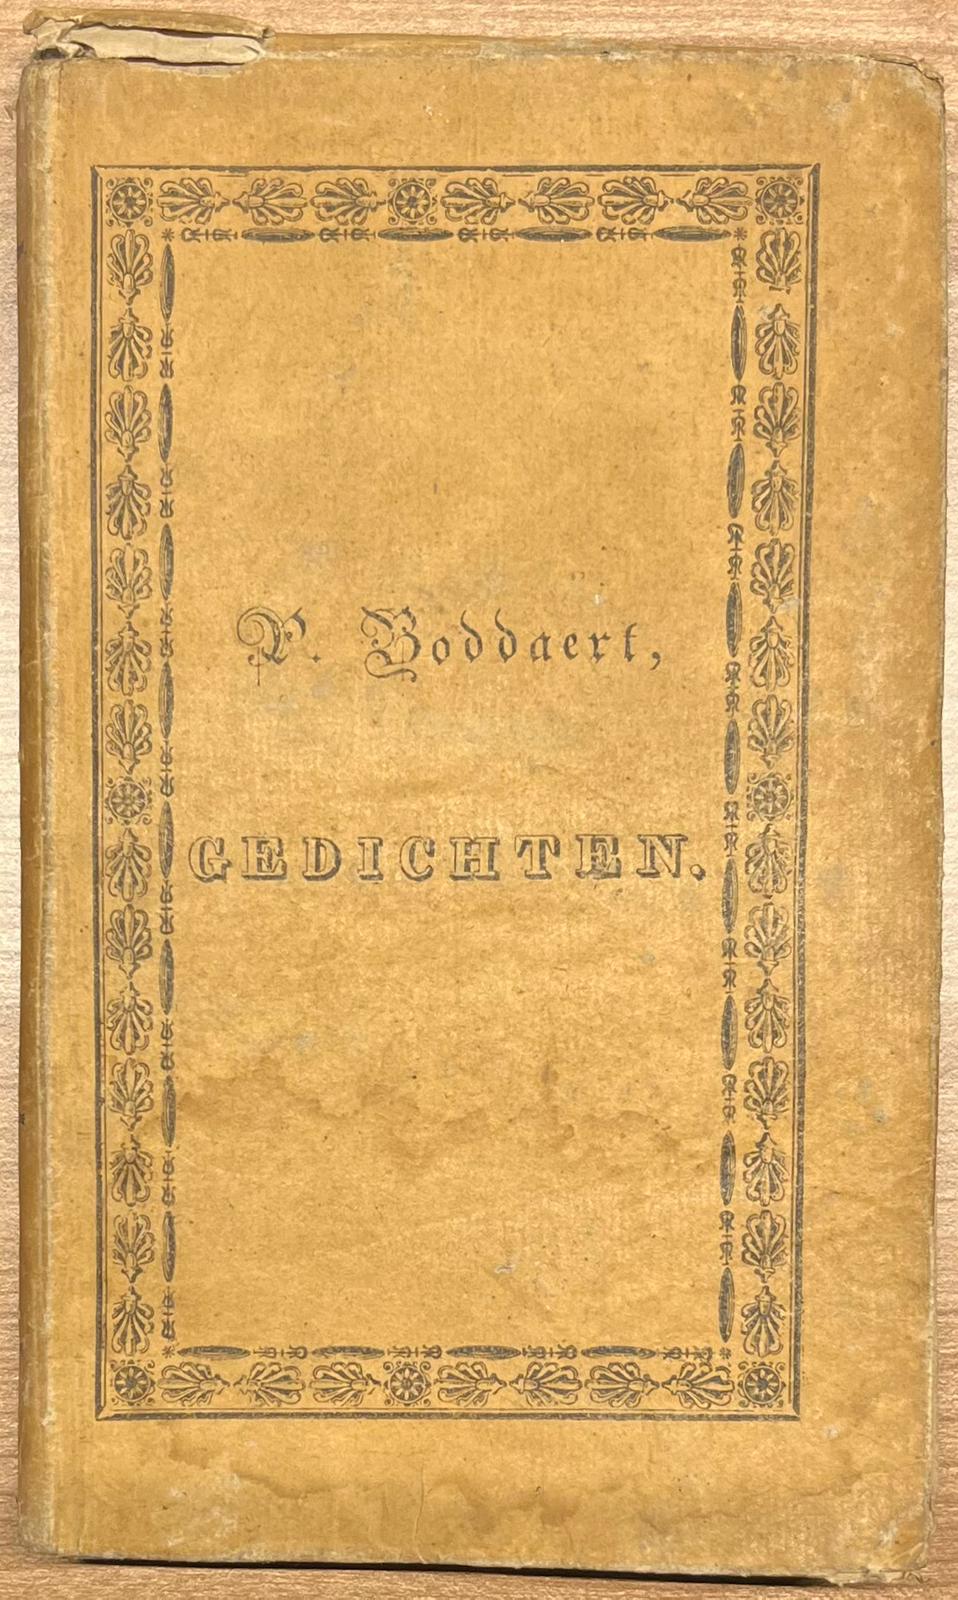 Poetry, 1827, Boddaert | Gedichten van P. Boddaert, Junior. tweede druk. Zalt-Bommel, bij Johannes Noman, 1827, 139 pp.